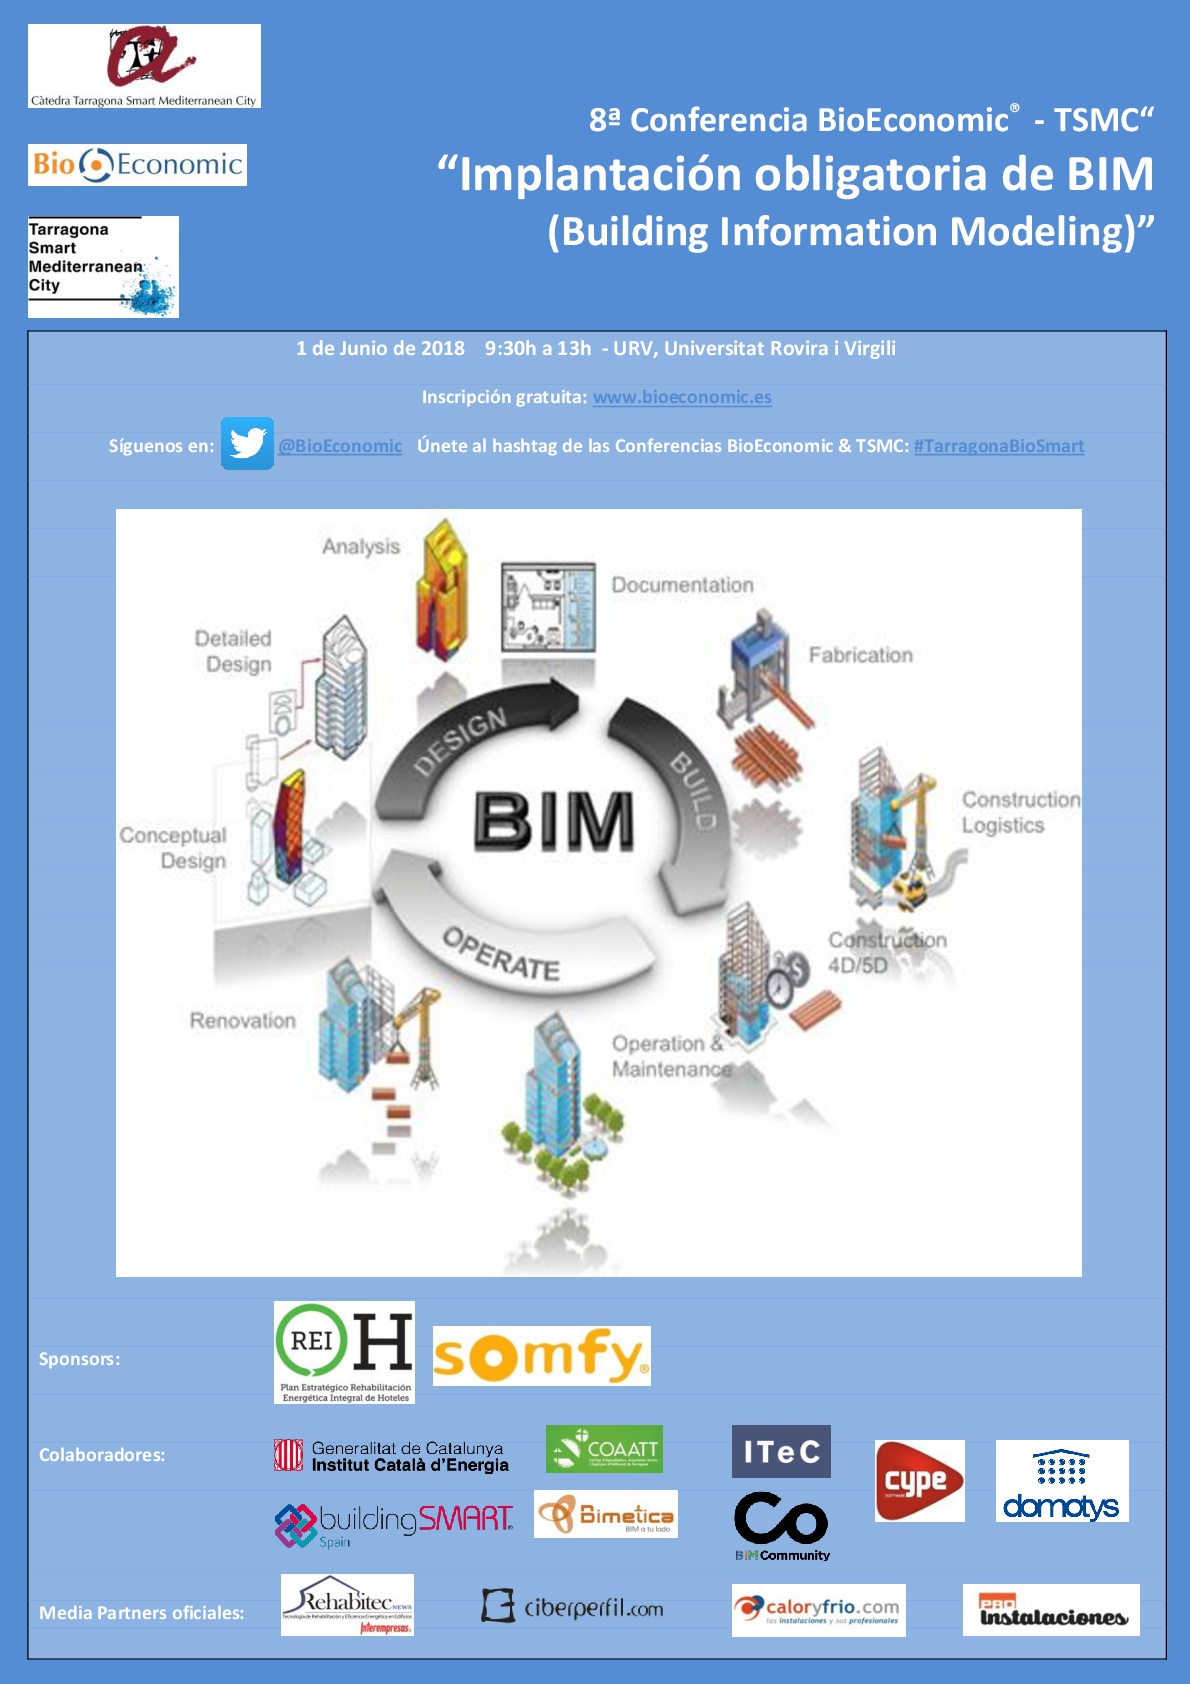 8ª Conferencia BioEconomic®  - TSMC “Implantación obligatoria de BIM (Building Information Modeling)”